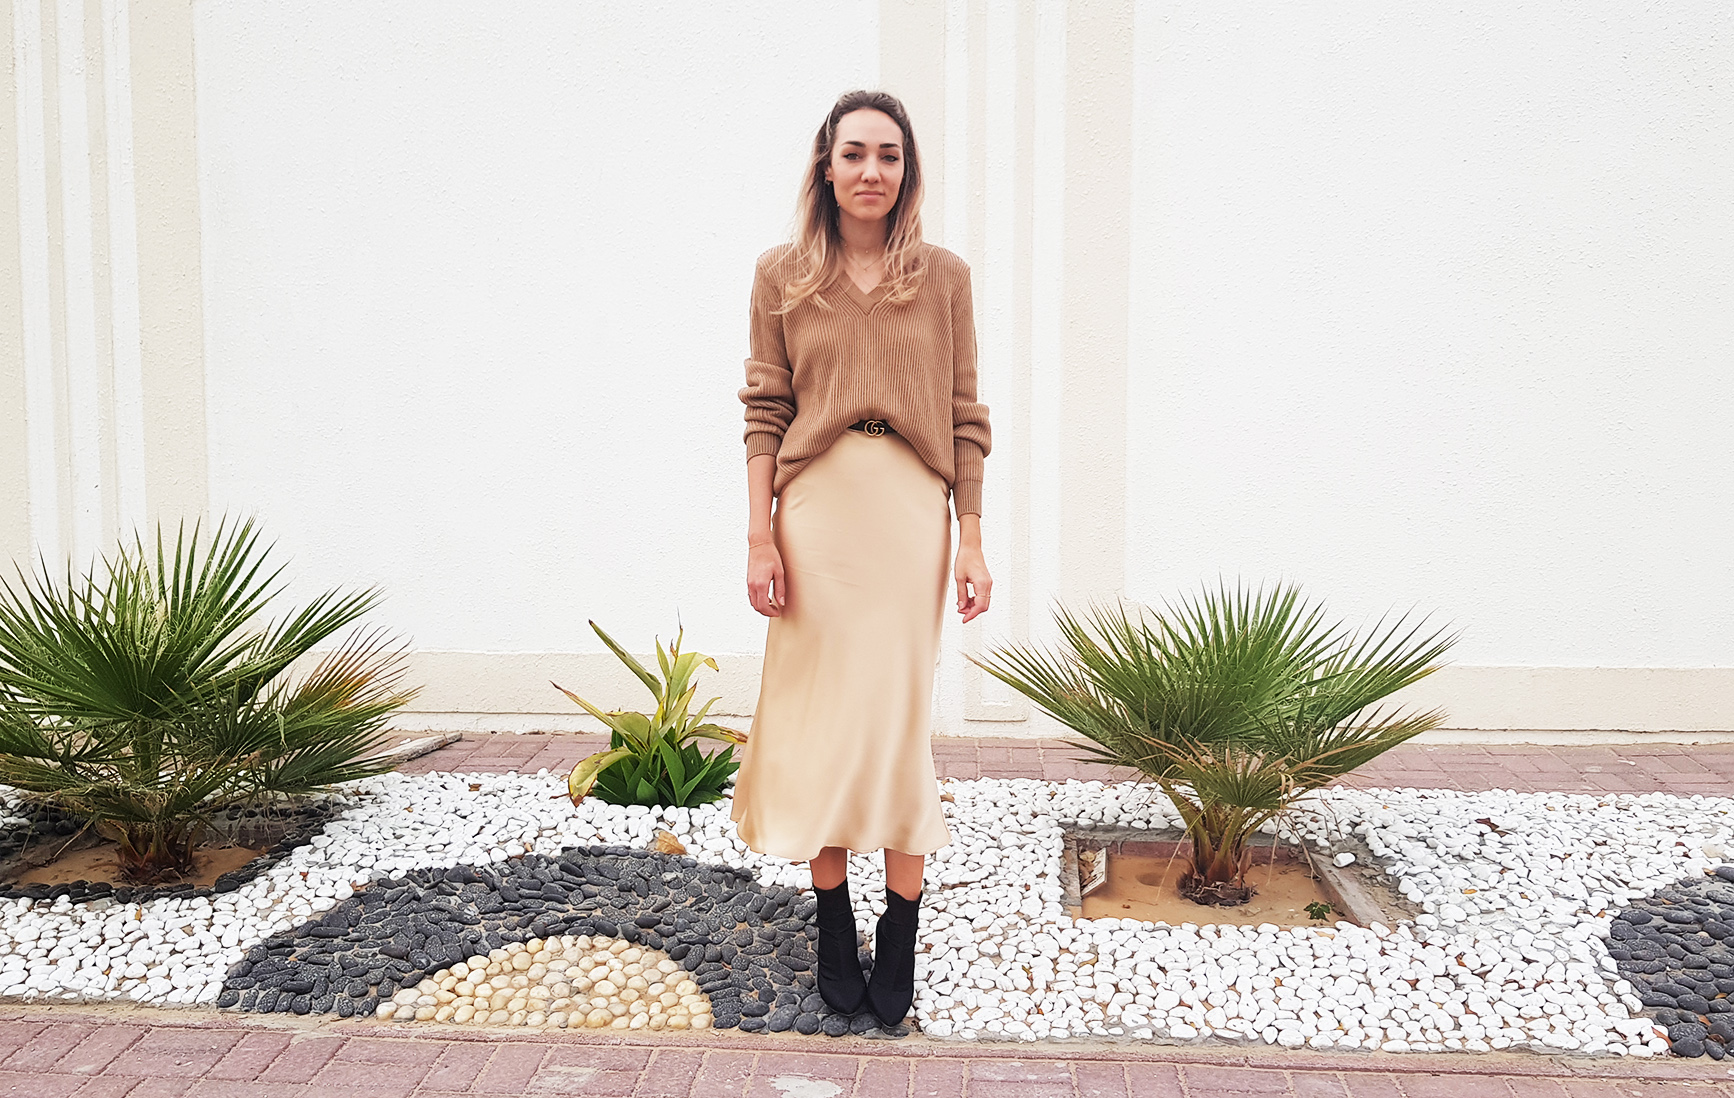 Newell Slip Skirt Styling Inspiration - Orange Lingerie